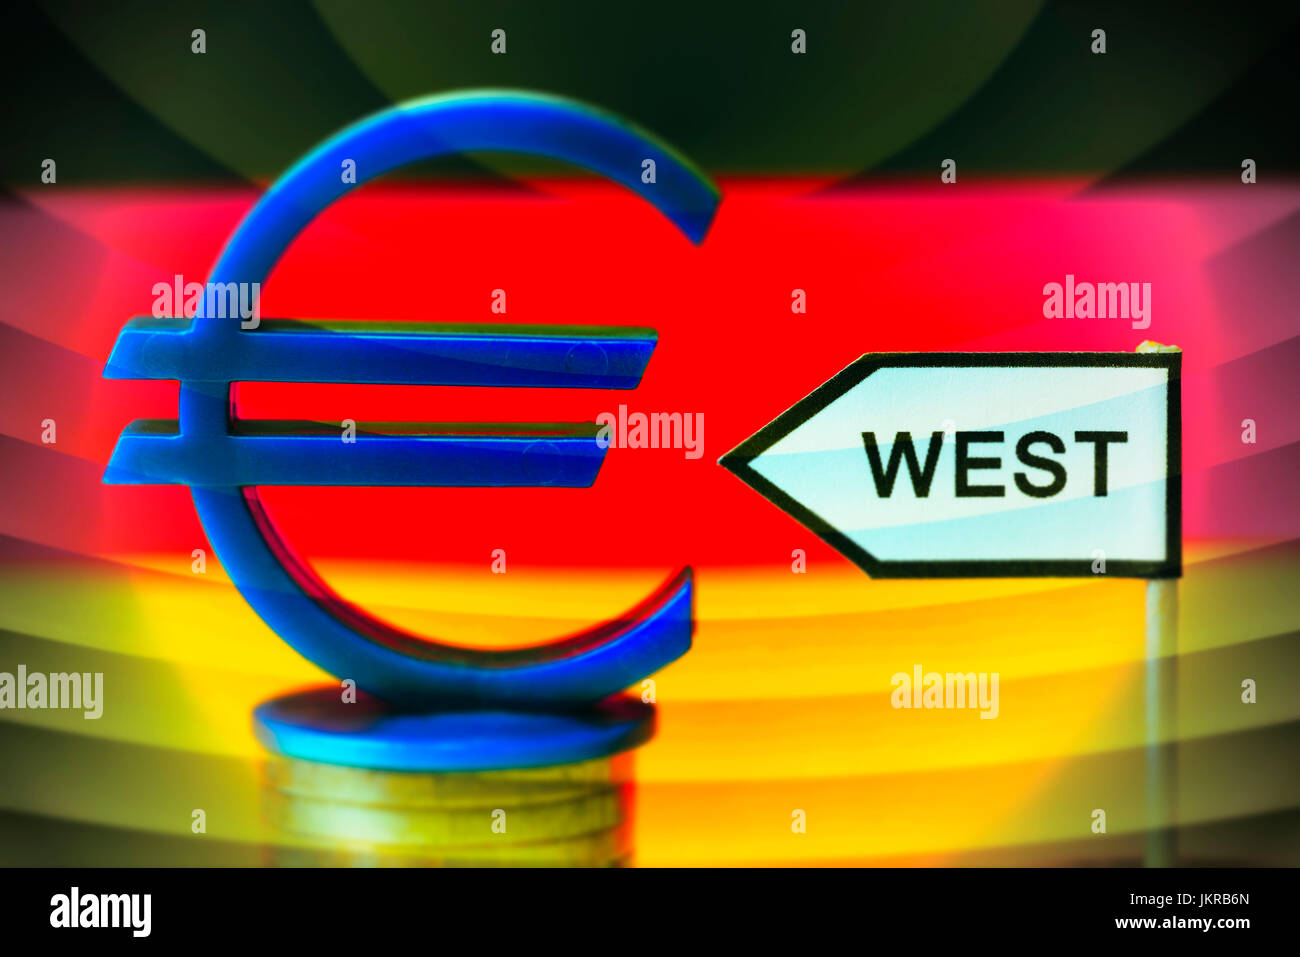 Signpost west and eurosign, unequal salaries in west country and Eastern Germany, Wegweiser West und Eurozeichen, ungleiche Gehälter in West- und Ostd Stock Photo